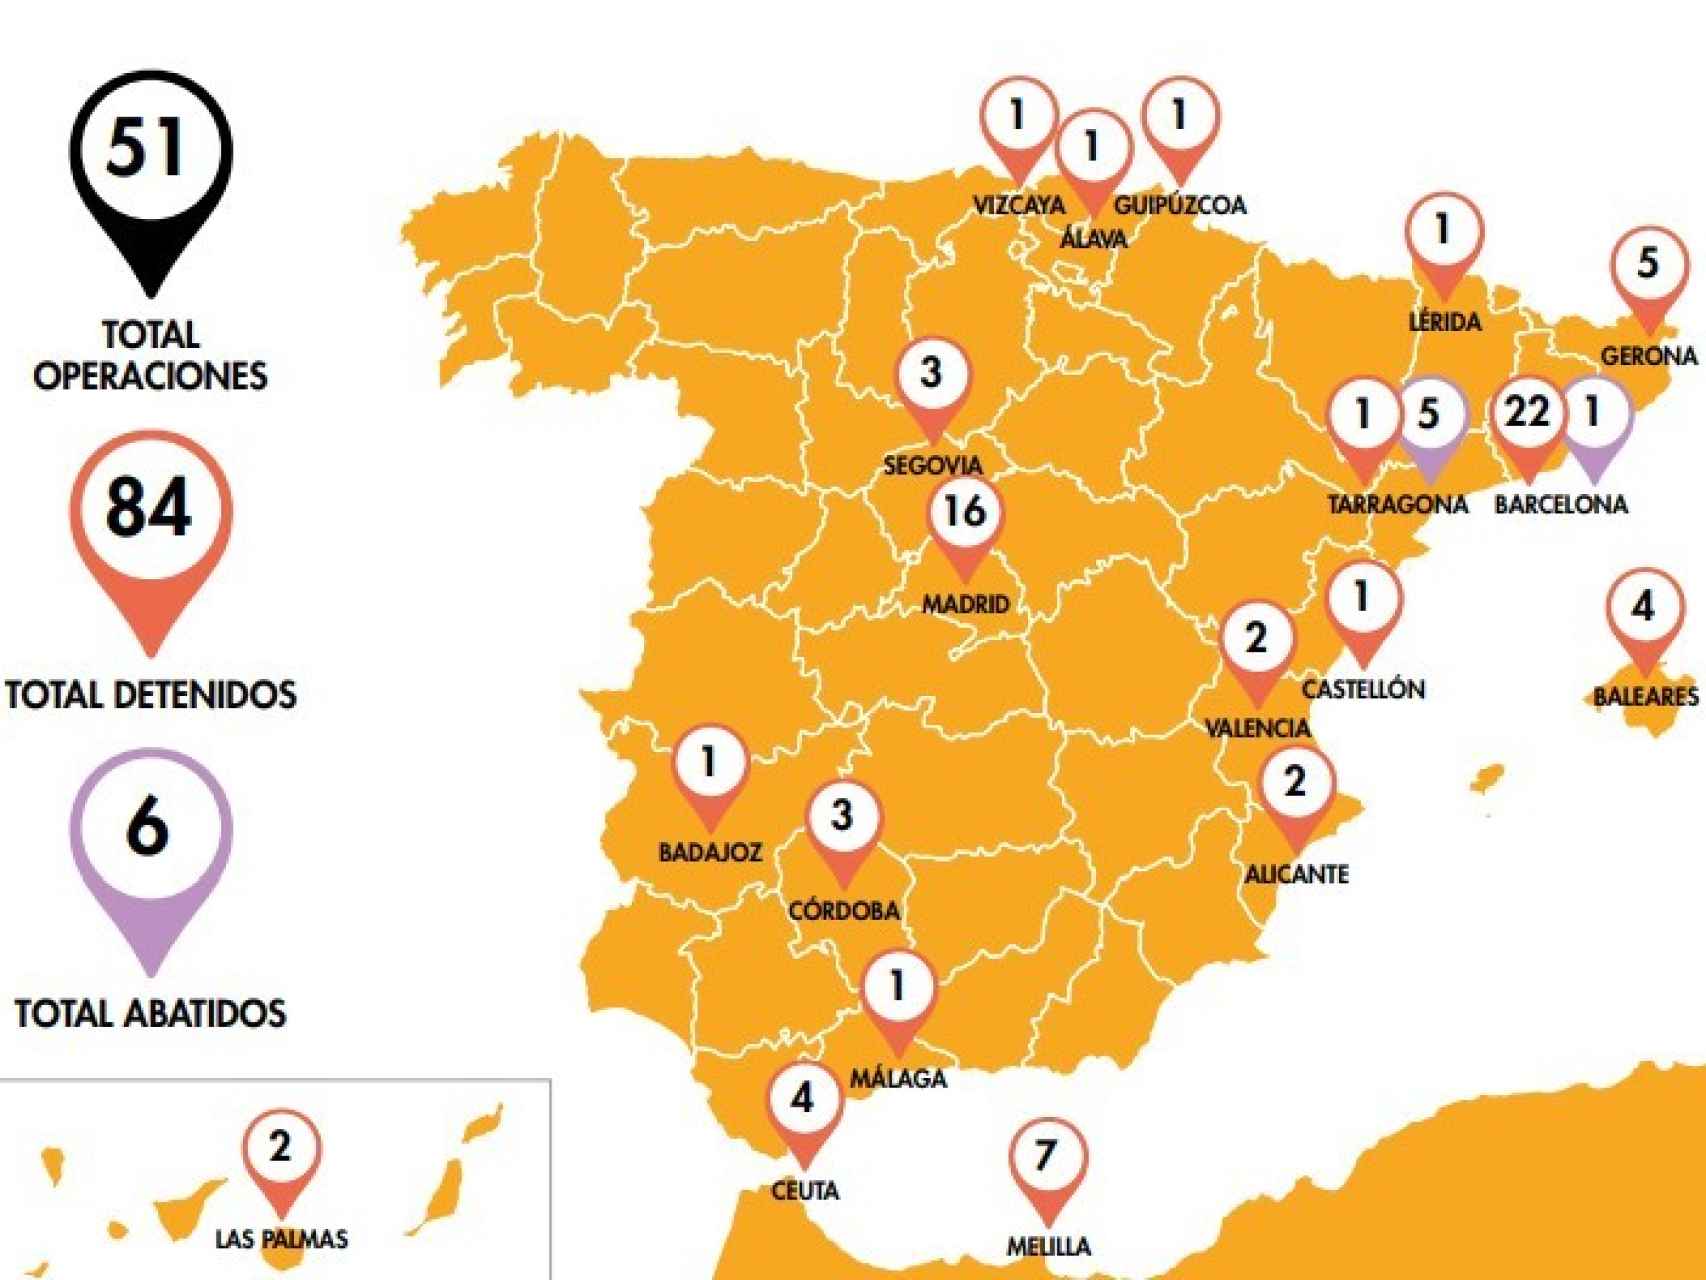 Operaciones policiales con detenciones de yihadistas en España en 2017.